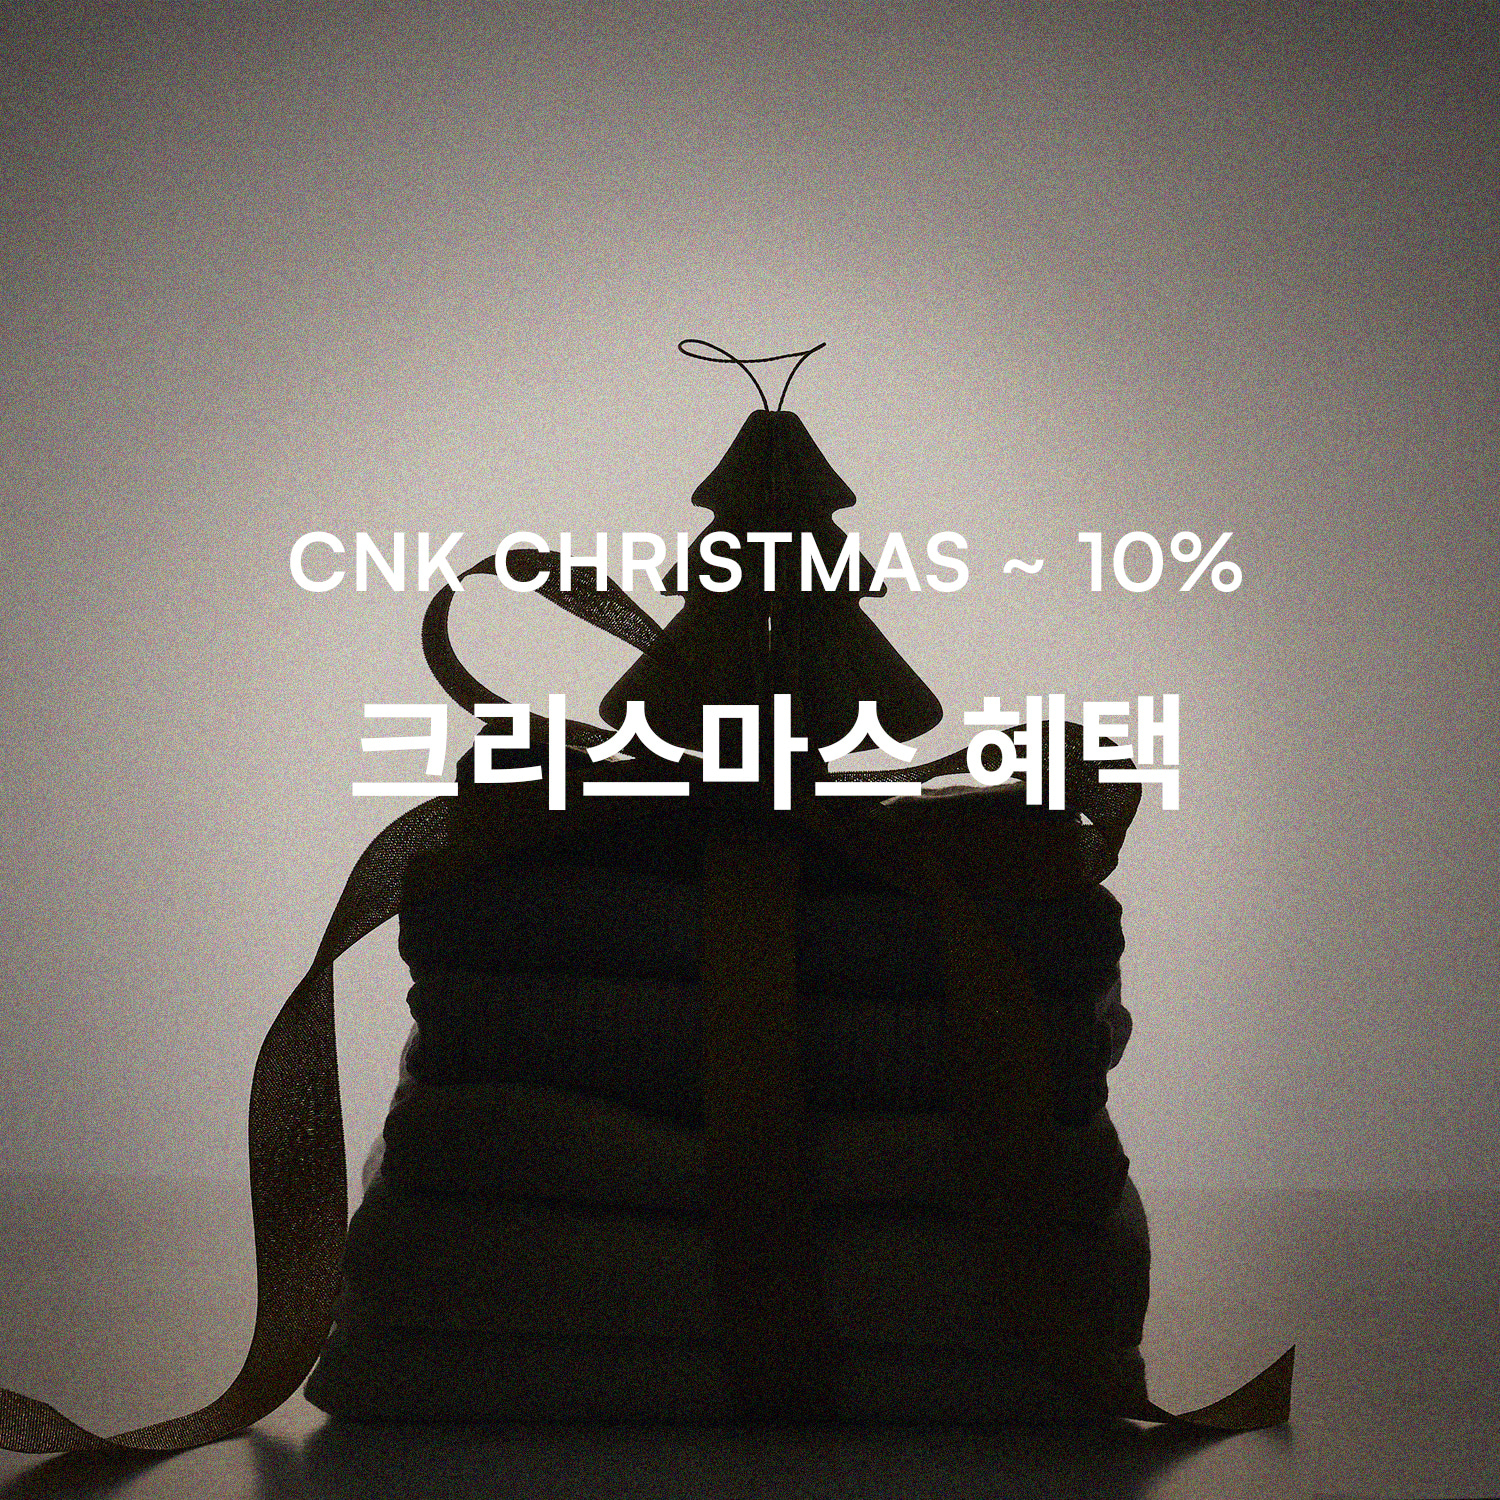 CNK 크리스마스 ~ 10%